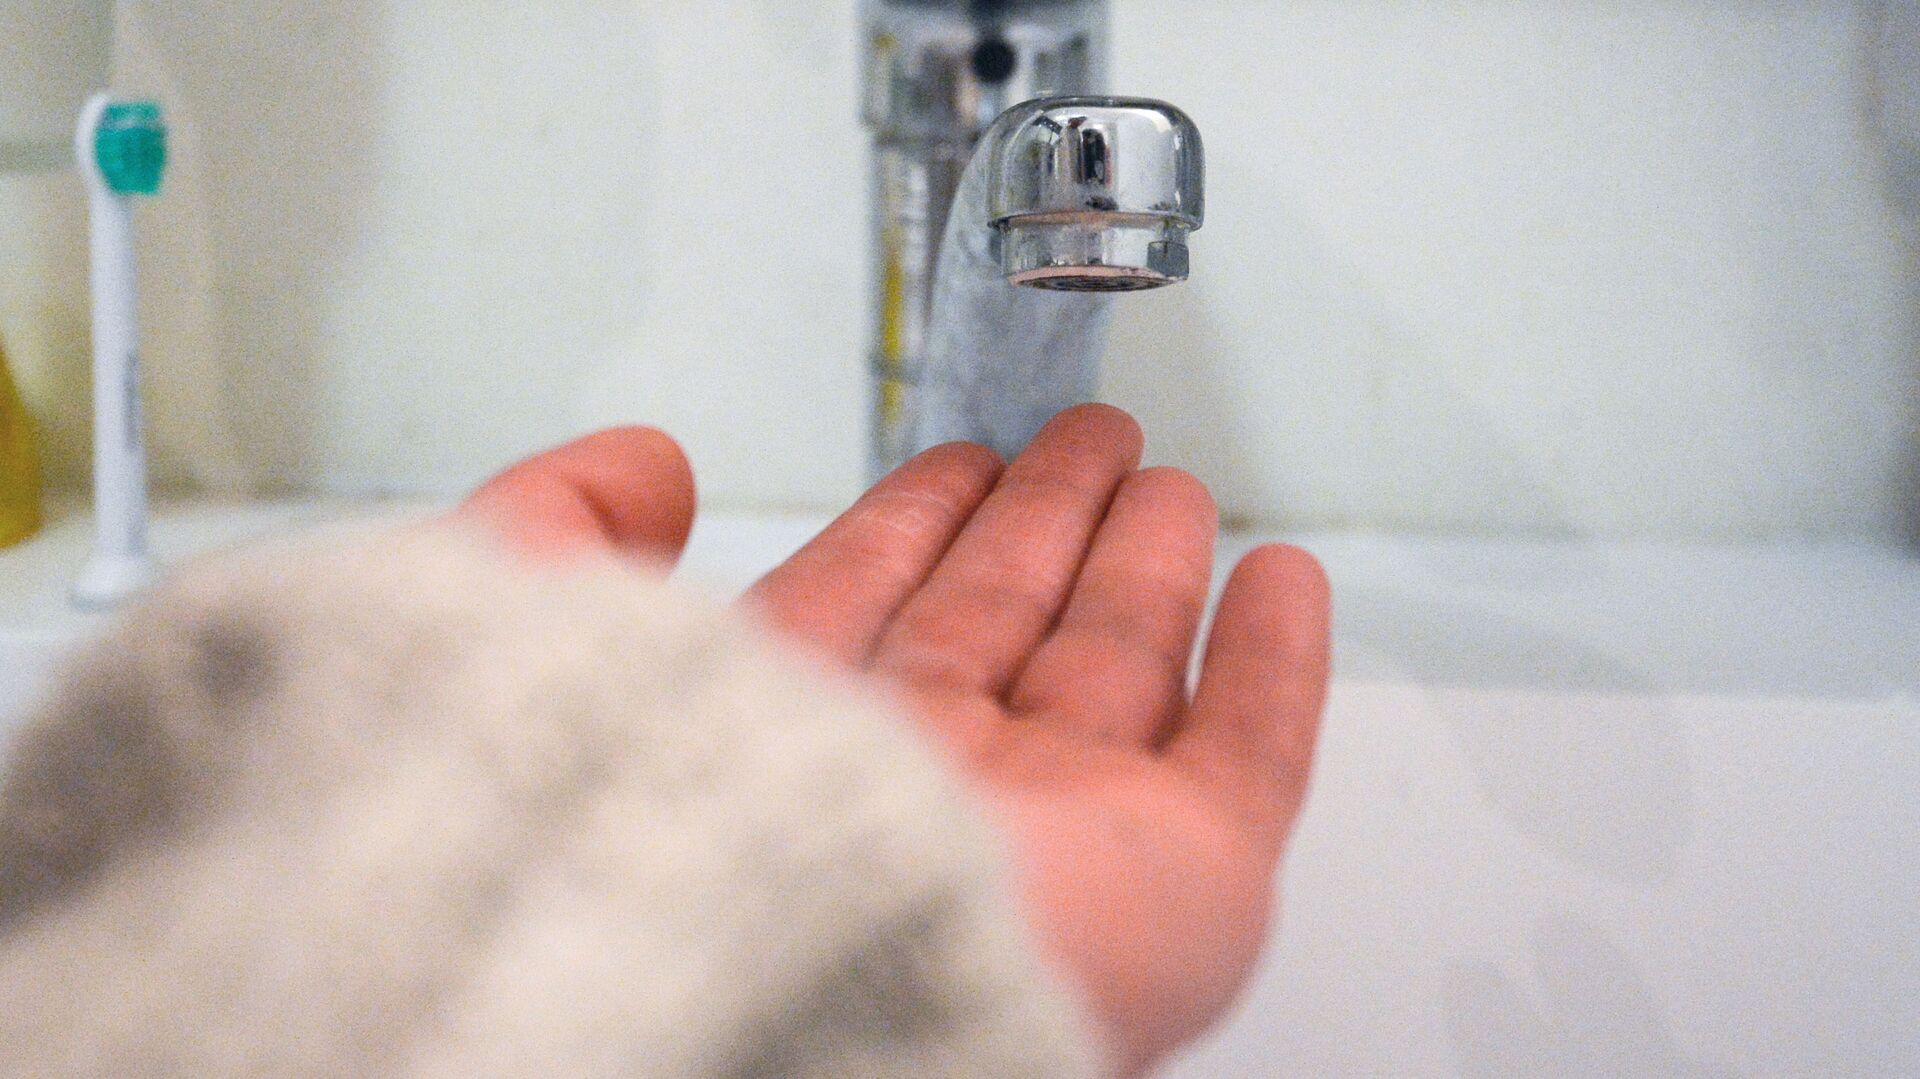 Кран в ванной комнате во время сезонного отключения горячей воды - РИА Новости, 1920, 16.04.2021